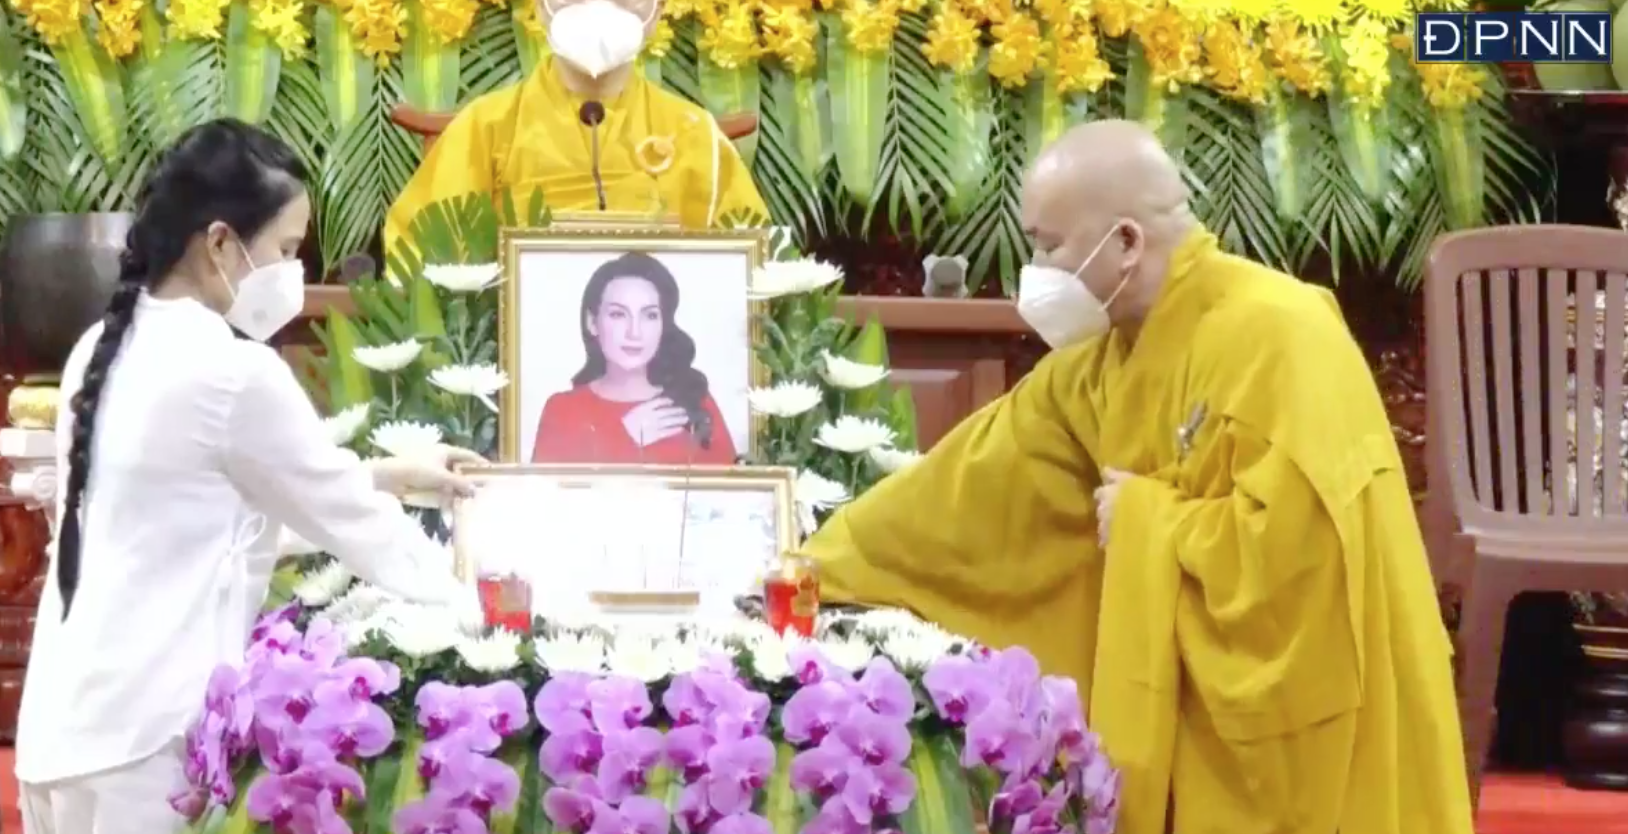 Chạnh lòng khoảnh khắc con gái nuôi của Phi Nhung thay mẹ nhận bằng tuyên dương trong lễ cầu siêu  - Ảnh 3.